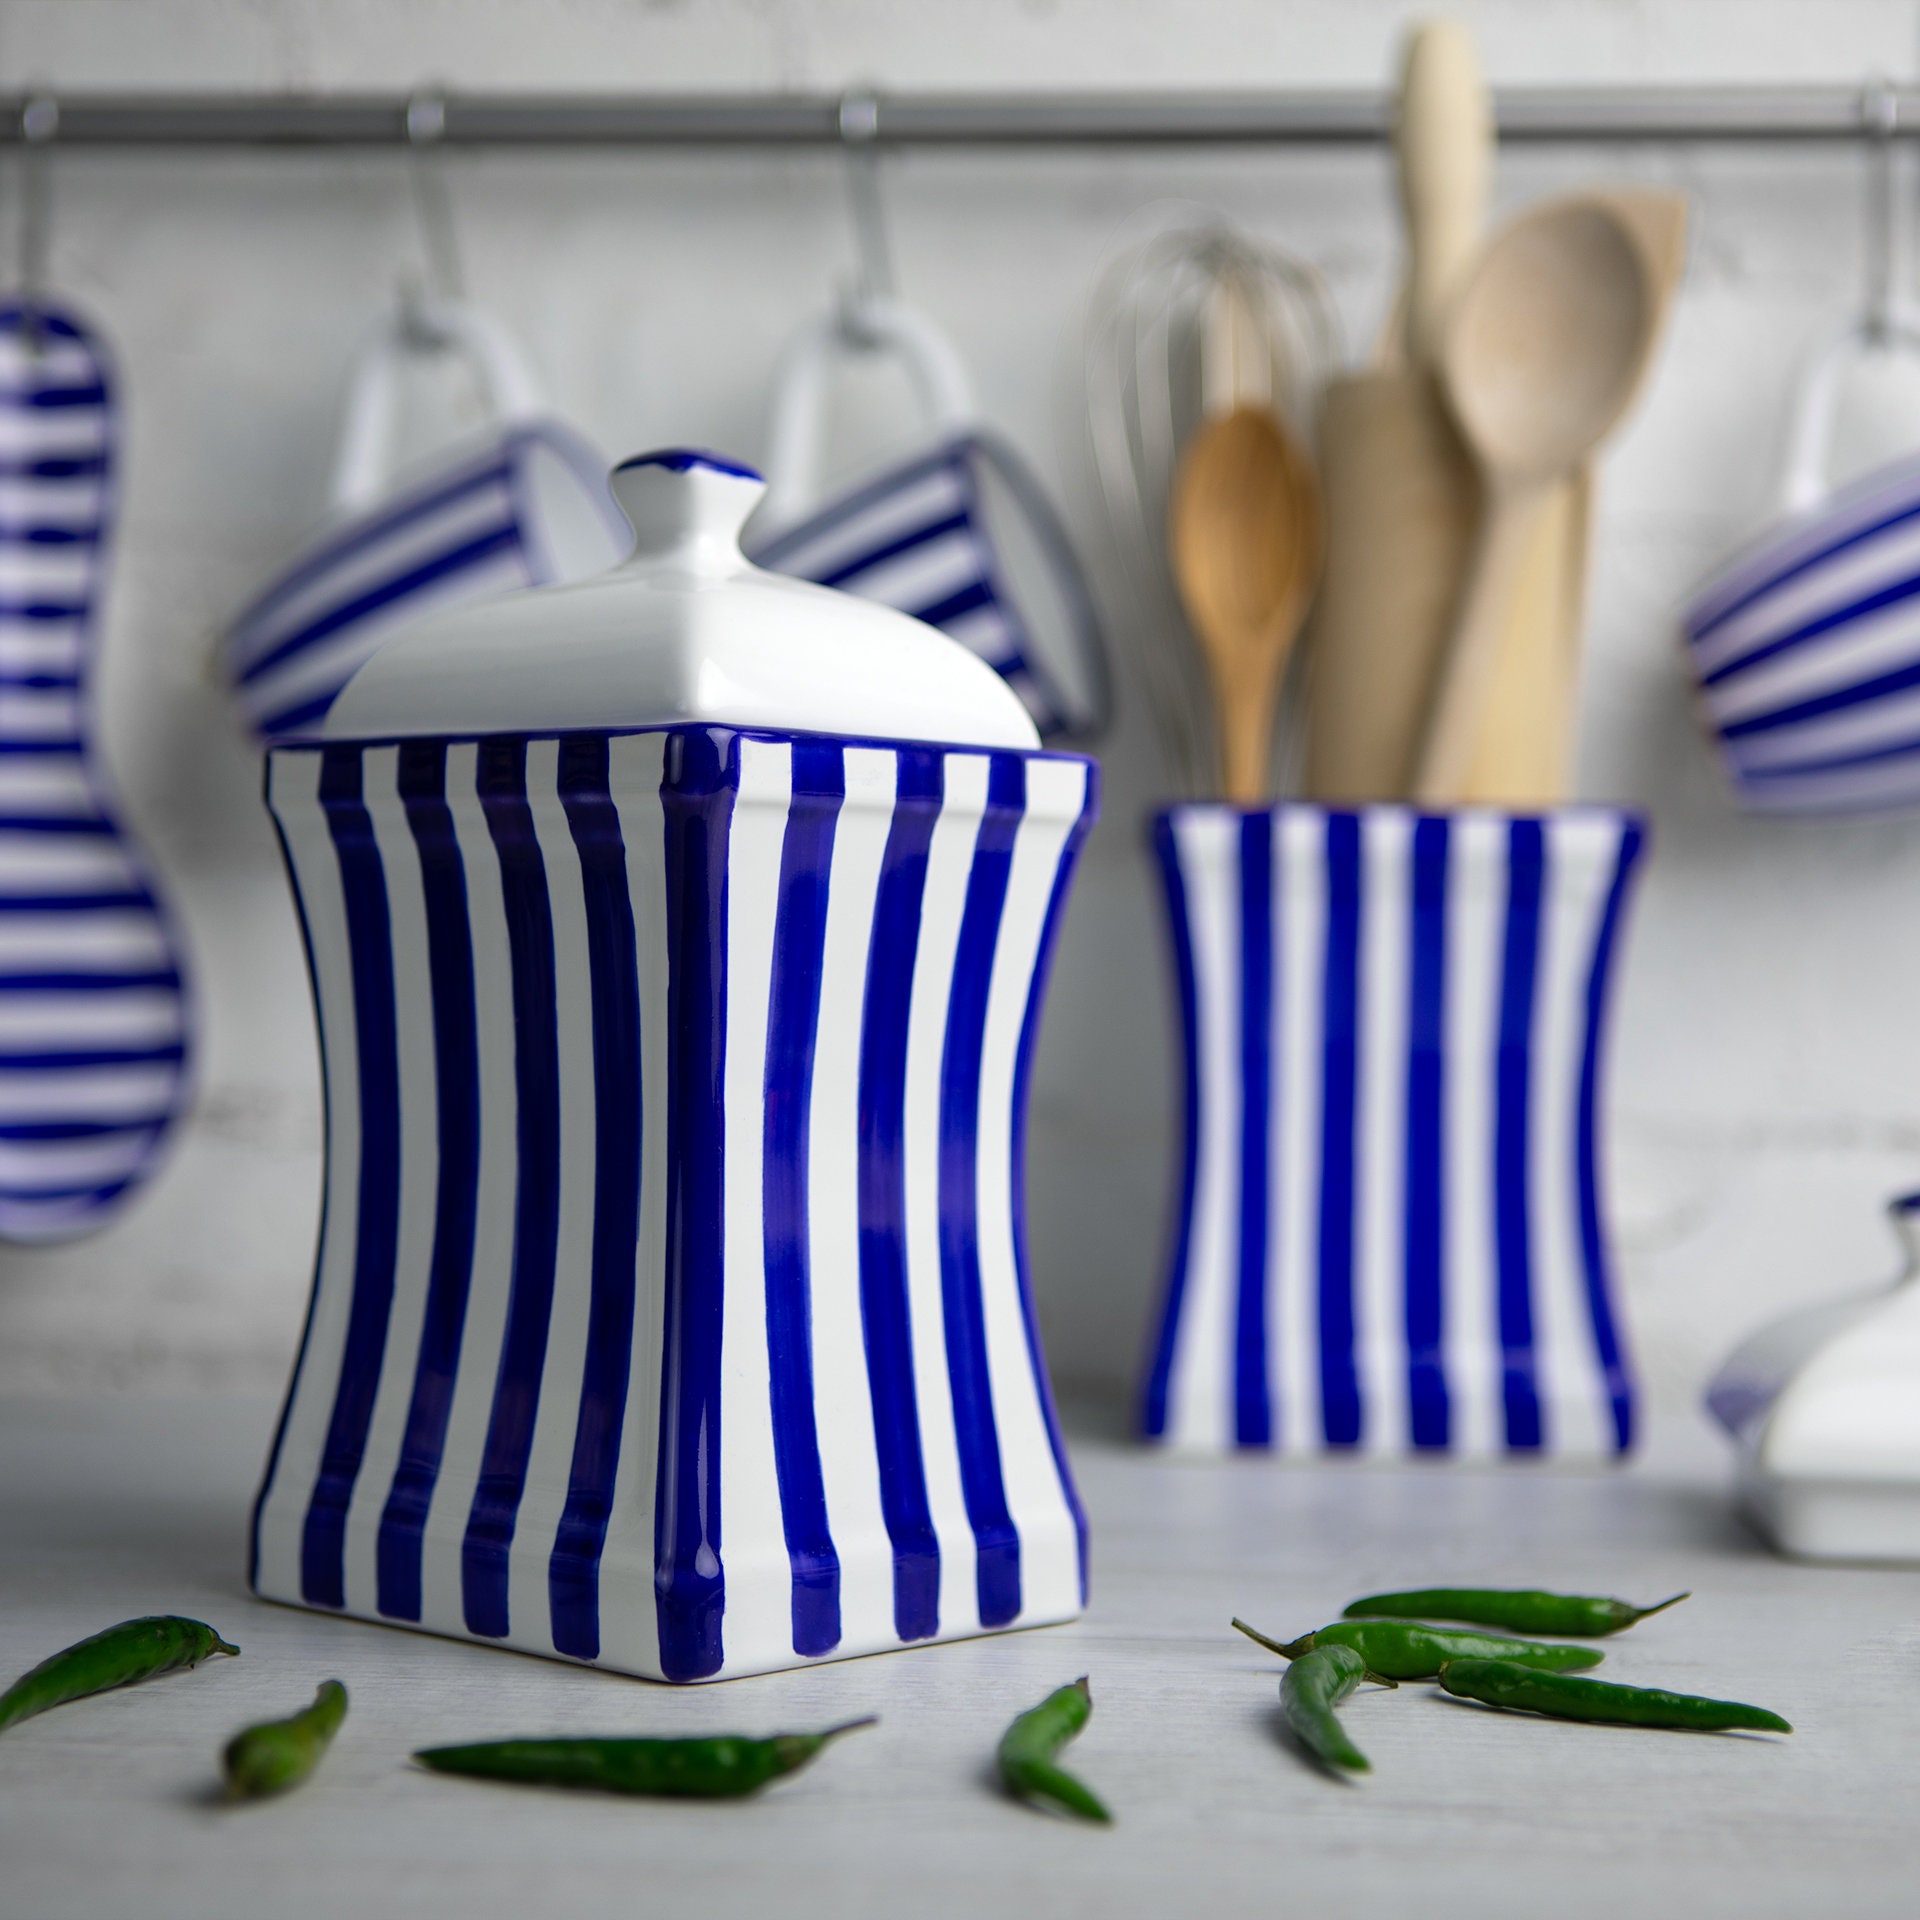 Navy Keksdose Küche Kanister, Dekorative Keramik Handgemacht Blaue Streifen Keramik  Tee Kaffee Zucker Kanister, Einweihungsgeschenk -  Österreich